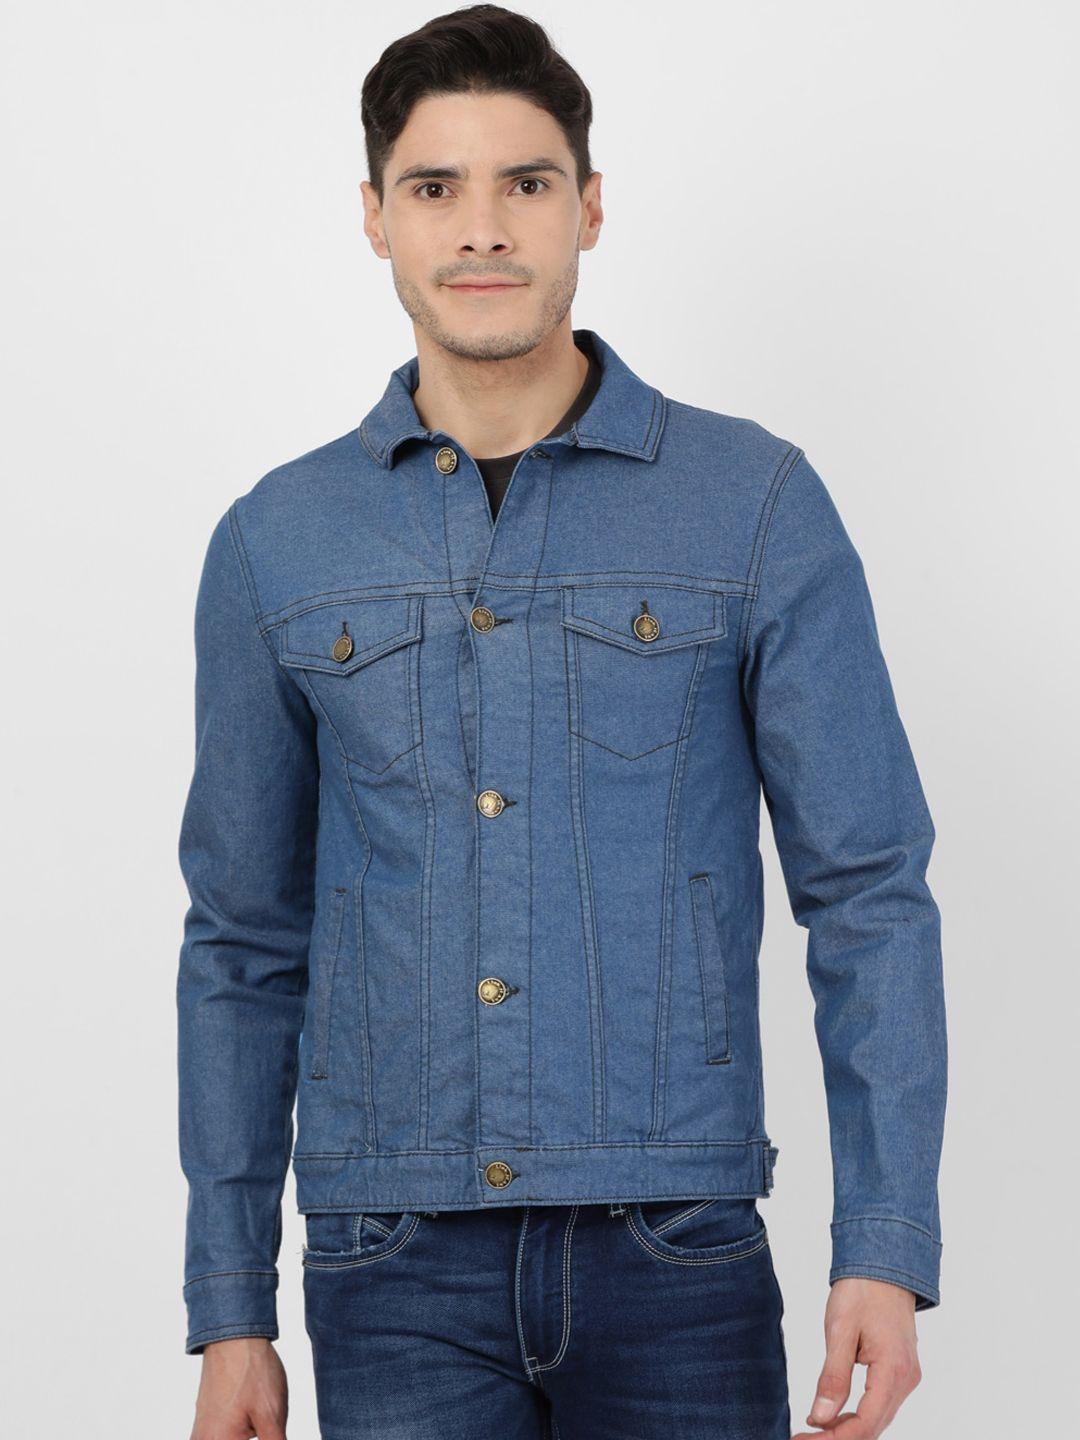 llak-jeans-men-blue-denim-jacket-with-patchwork